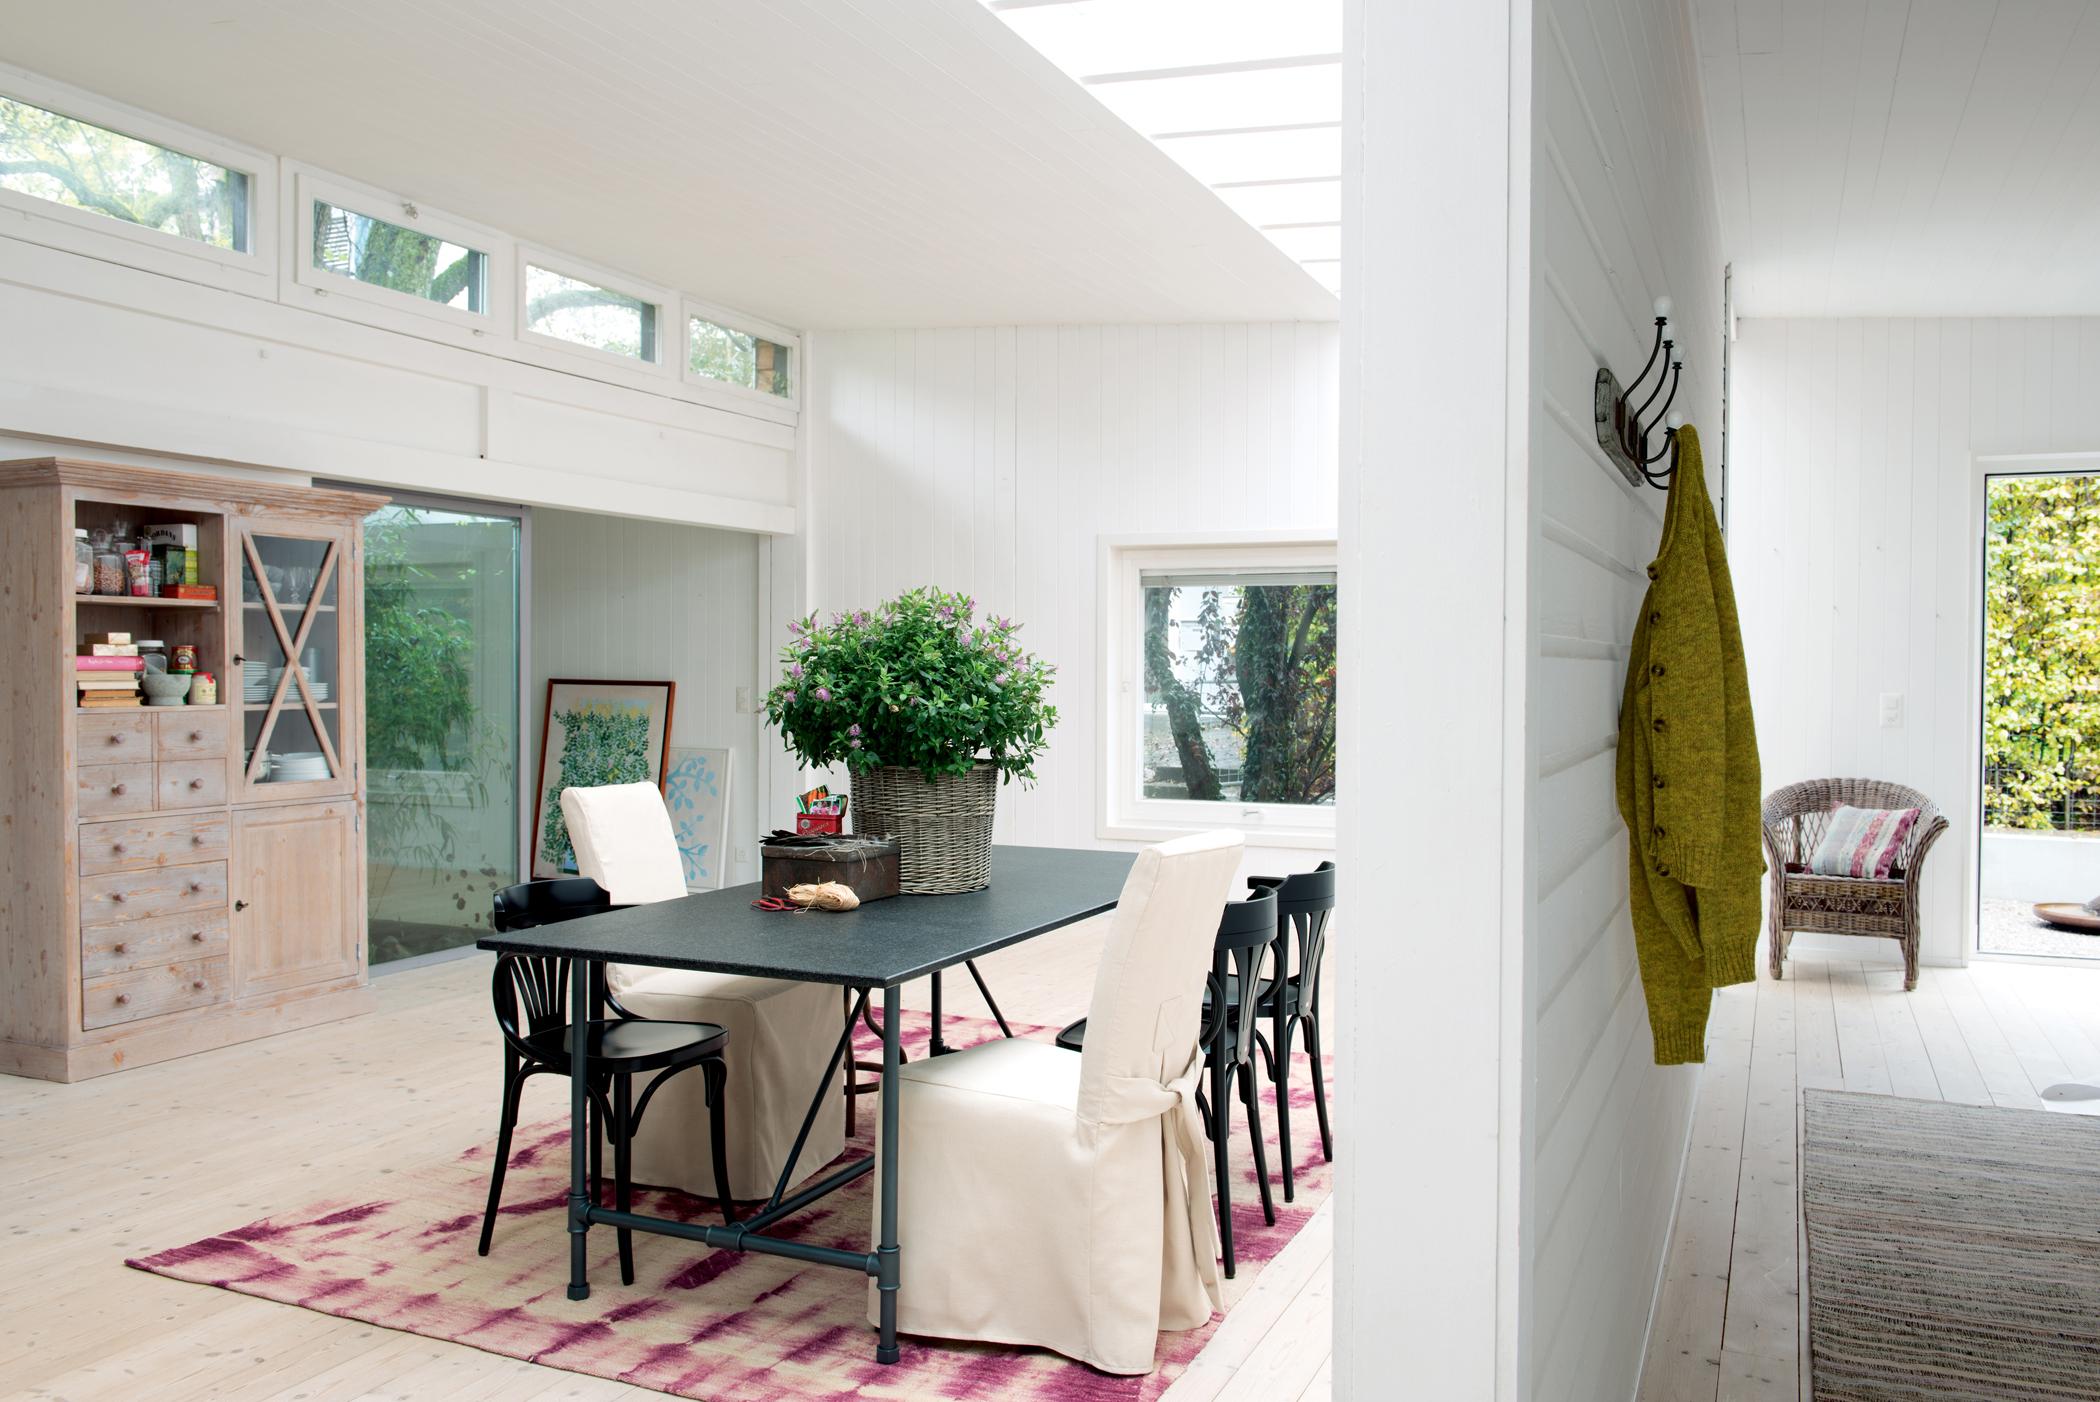 Esszimmer modern mit Weiß gestalten #stuhl #fensterfront #teppich #wohnzimmer #esstisch #schrank #stuhlhusse #hausgestaltung ©Pfister